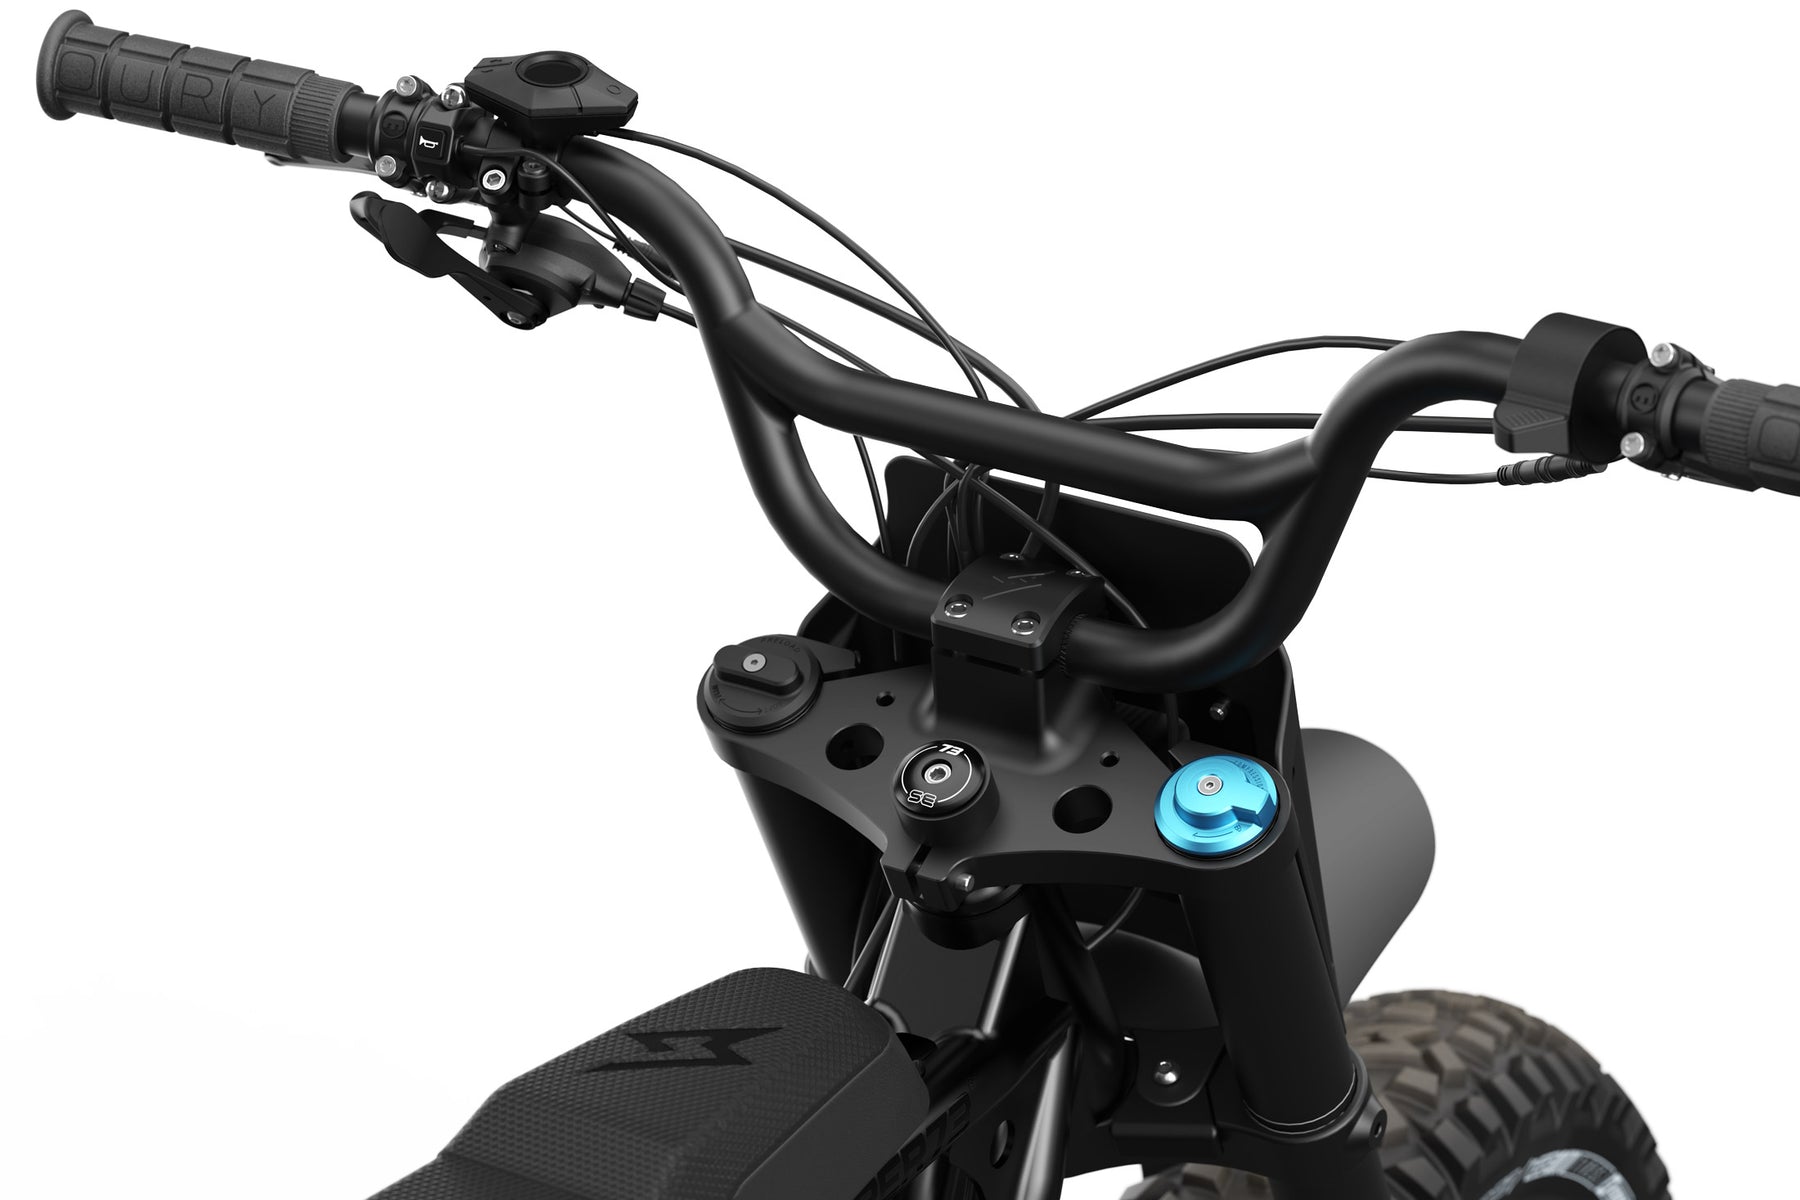 Detail shot of the stem cap on the SUPER73-R Blackout SE bike.